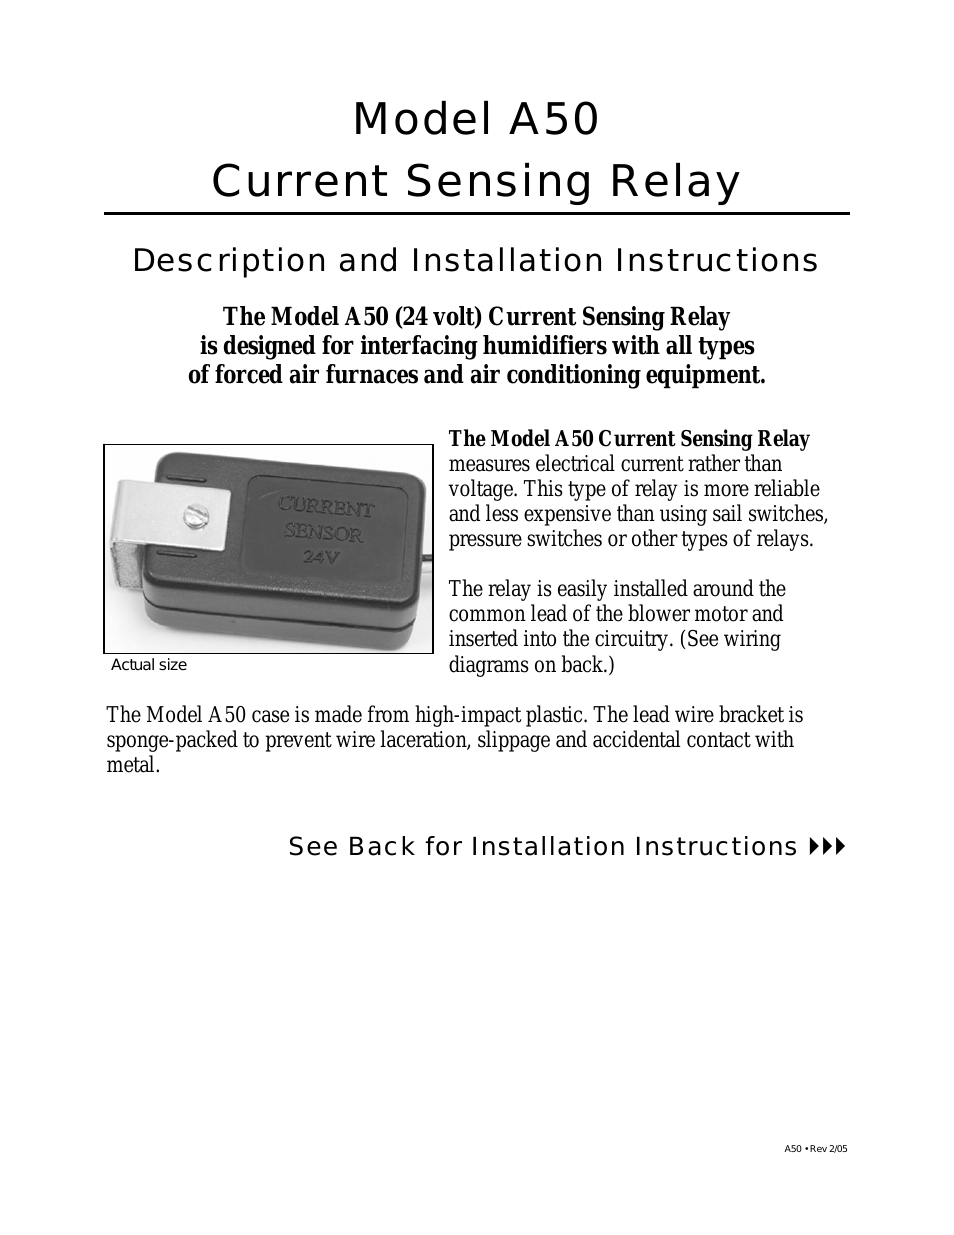 Current Sensing Relay A50